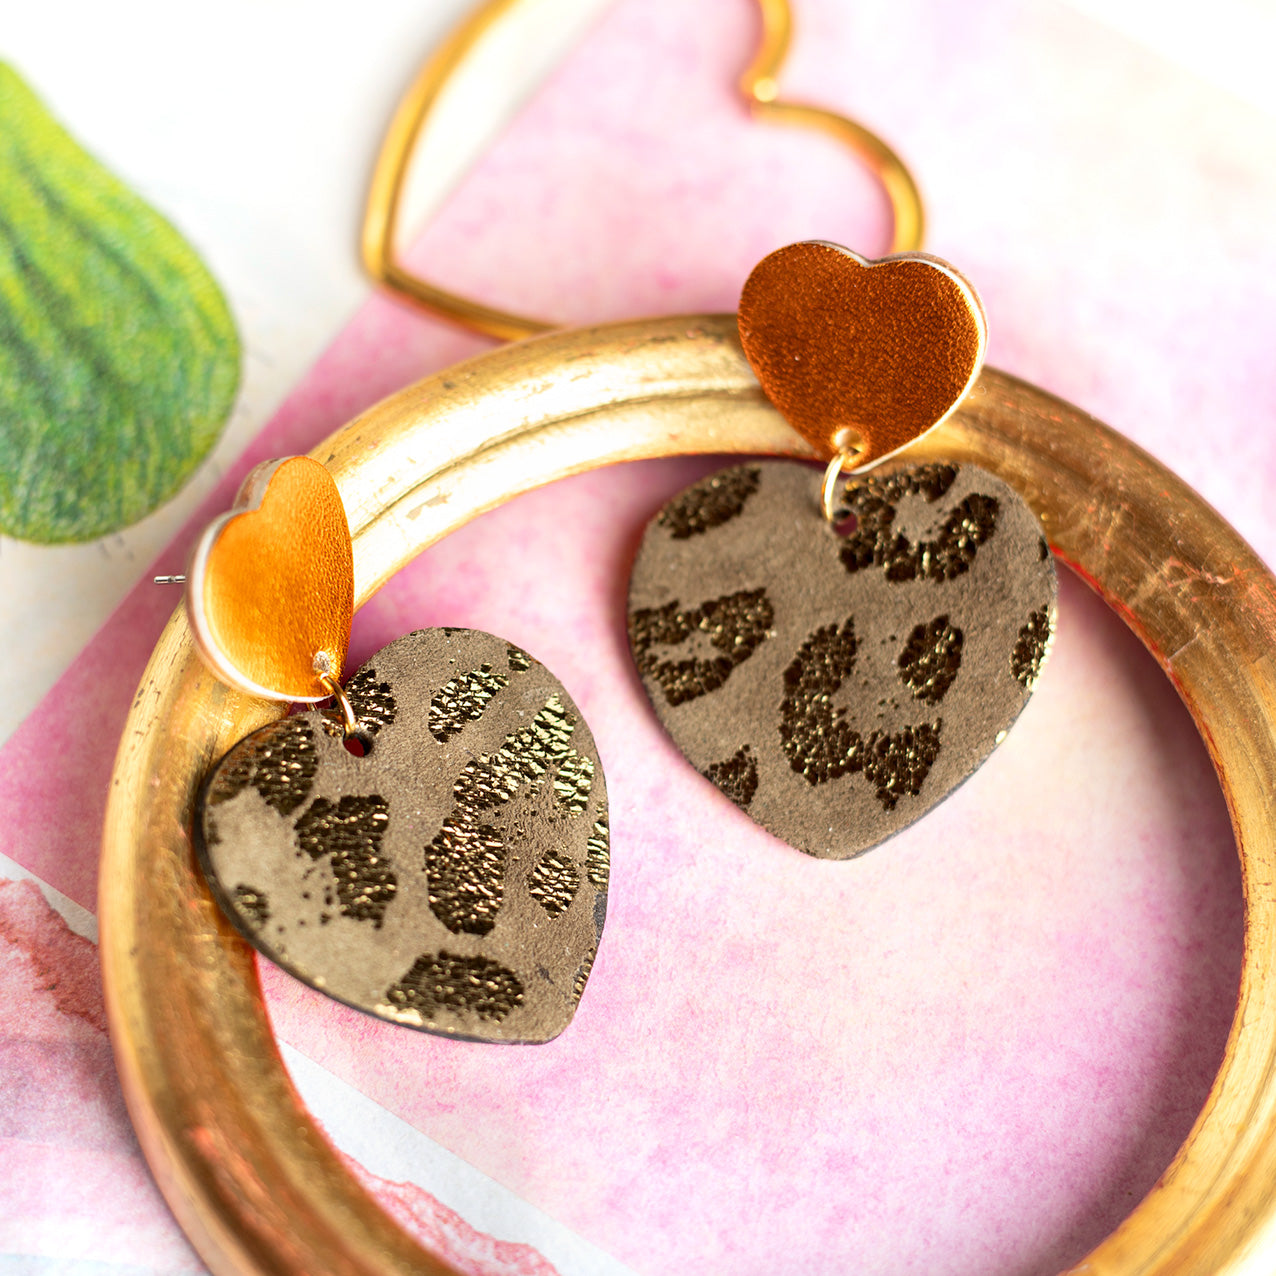 Double Hearts earrings - glittery brown leather, metallic orange